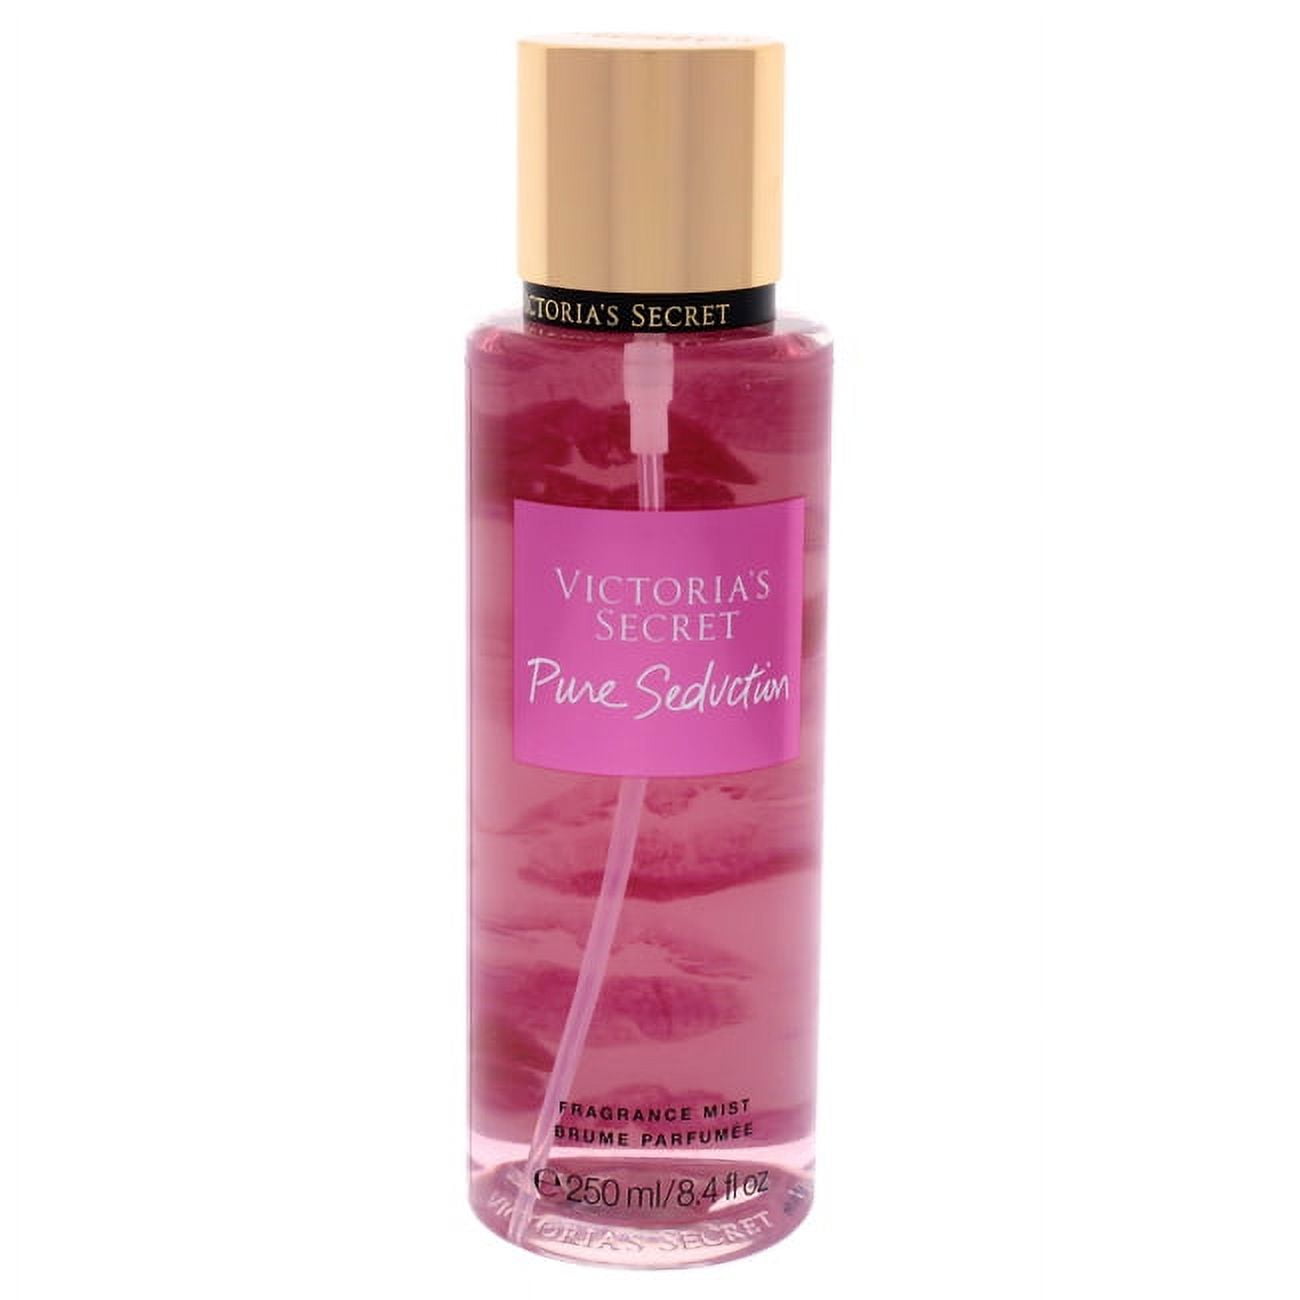 Victoria's Secret Pure Seduction Fragrance Mist 8.4 oz 